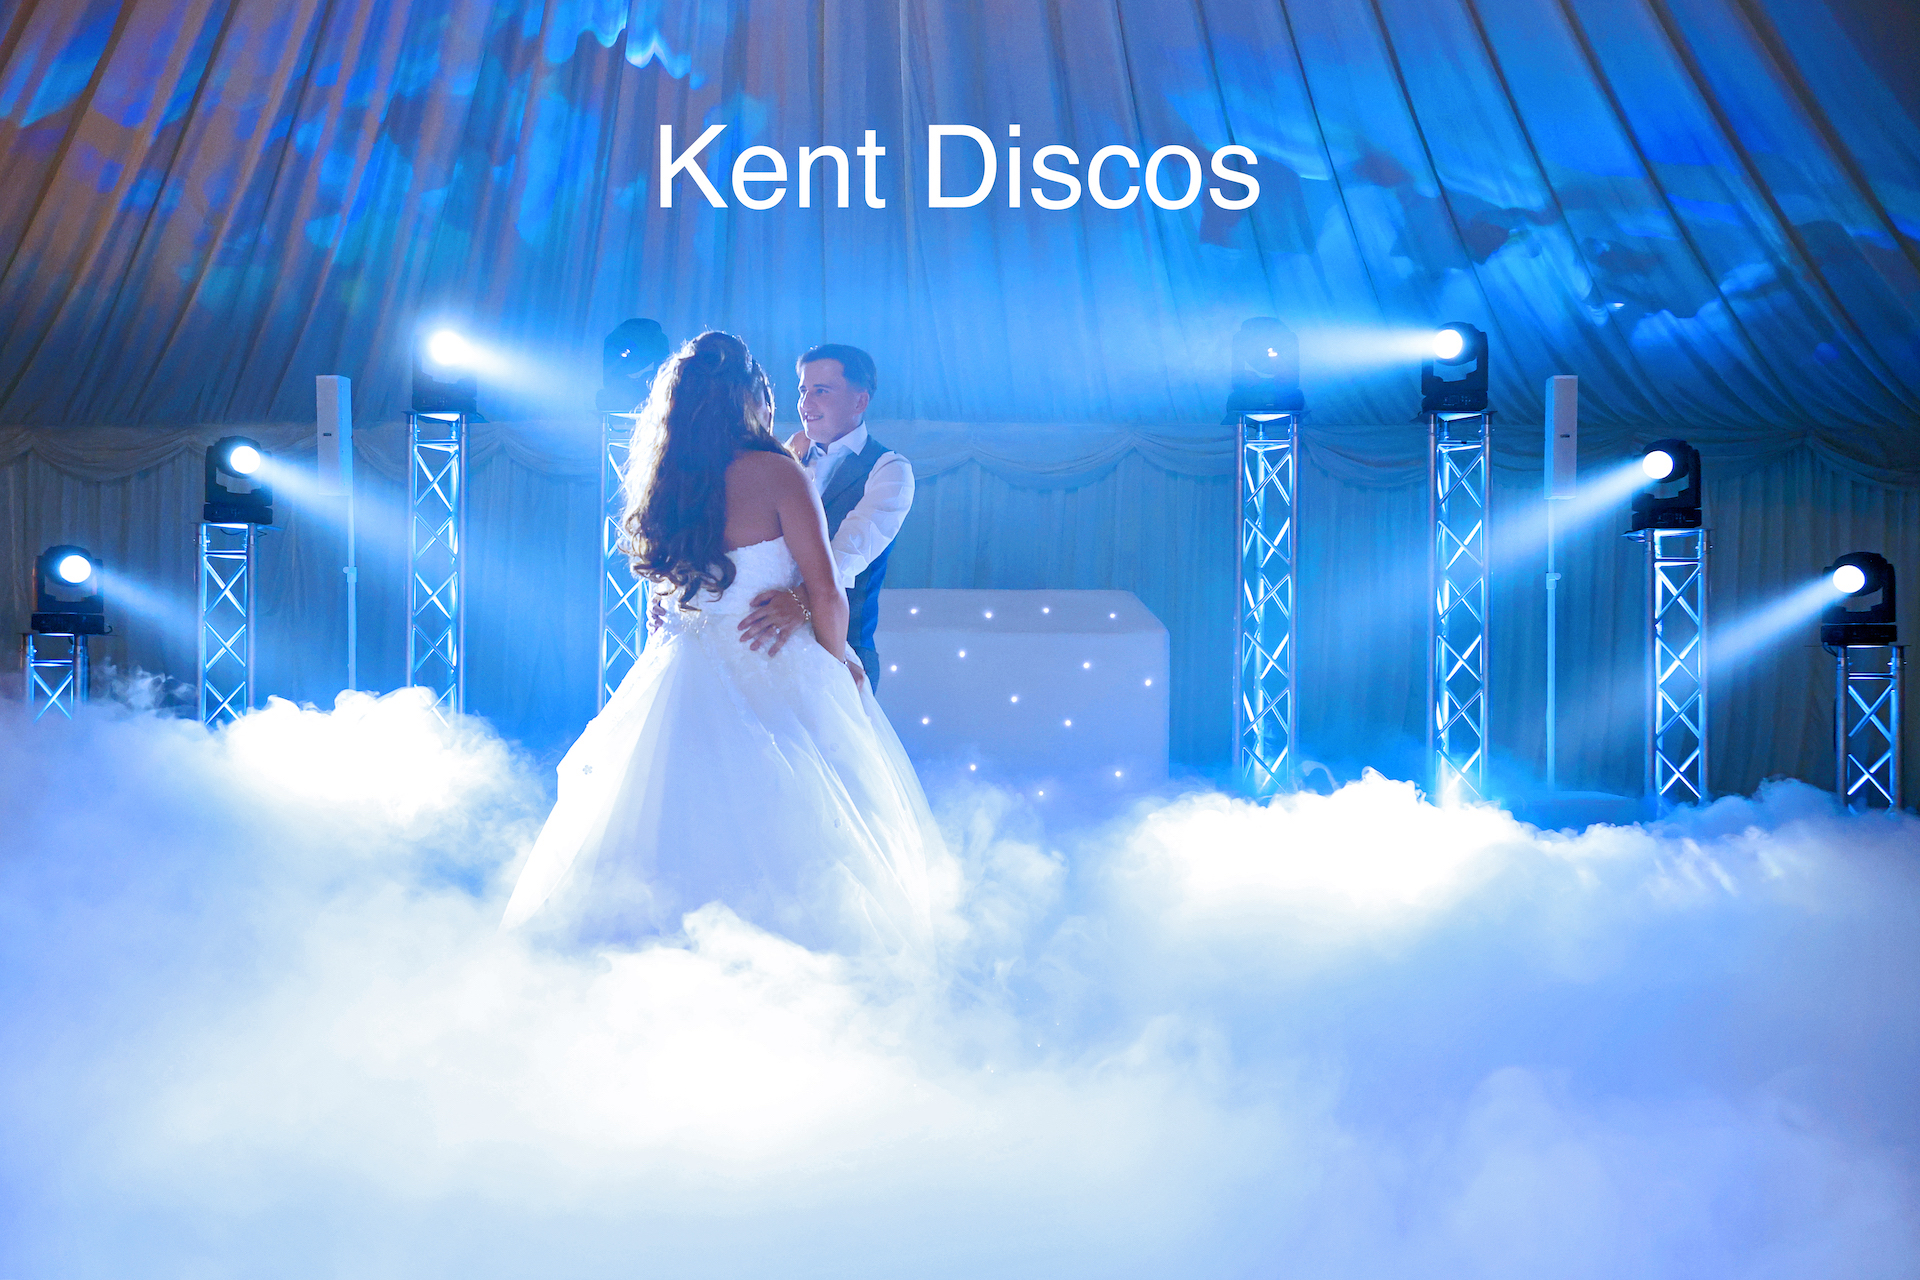 Kent Discos